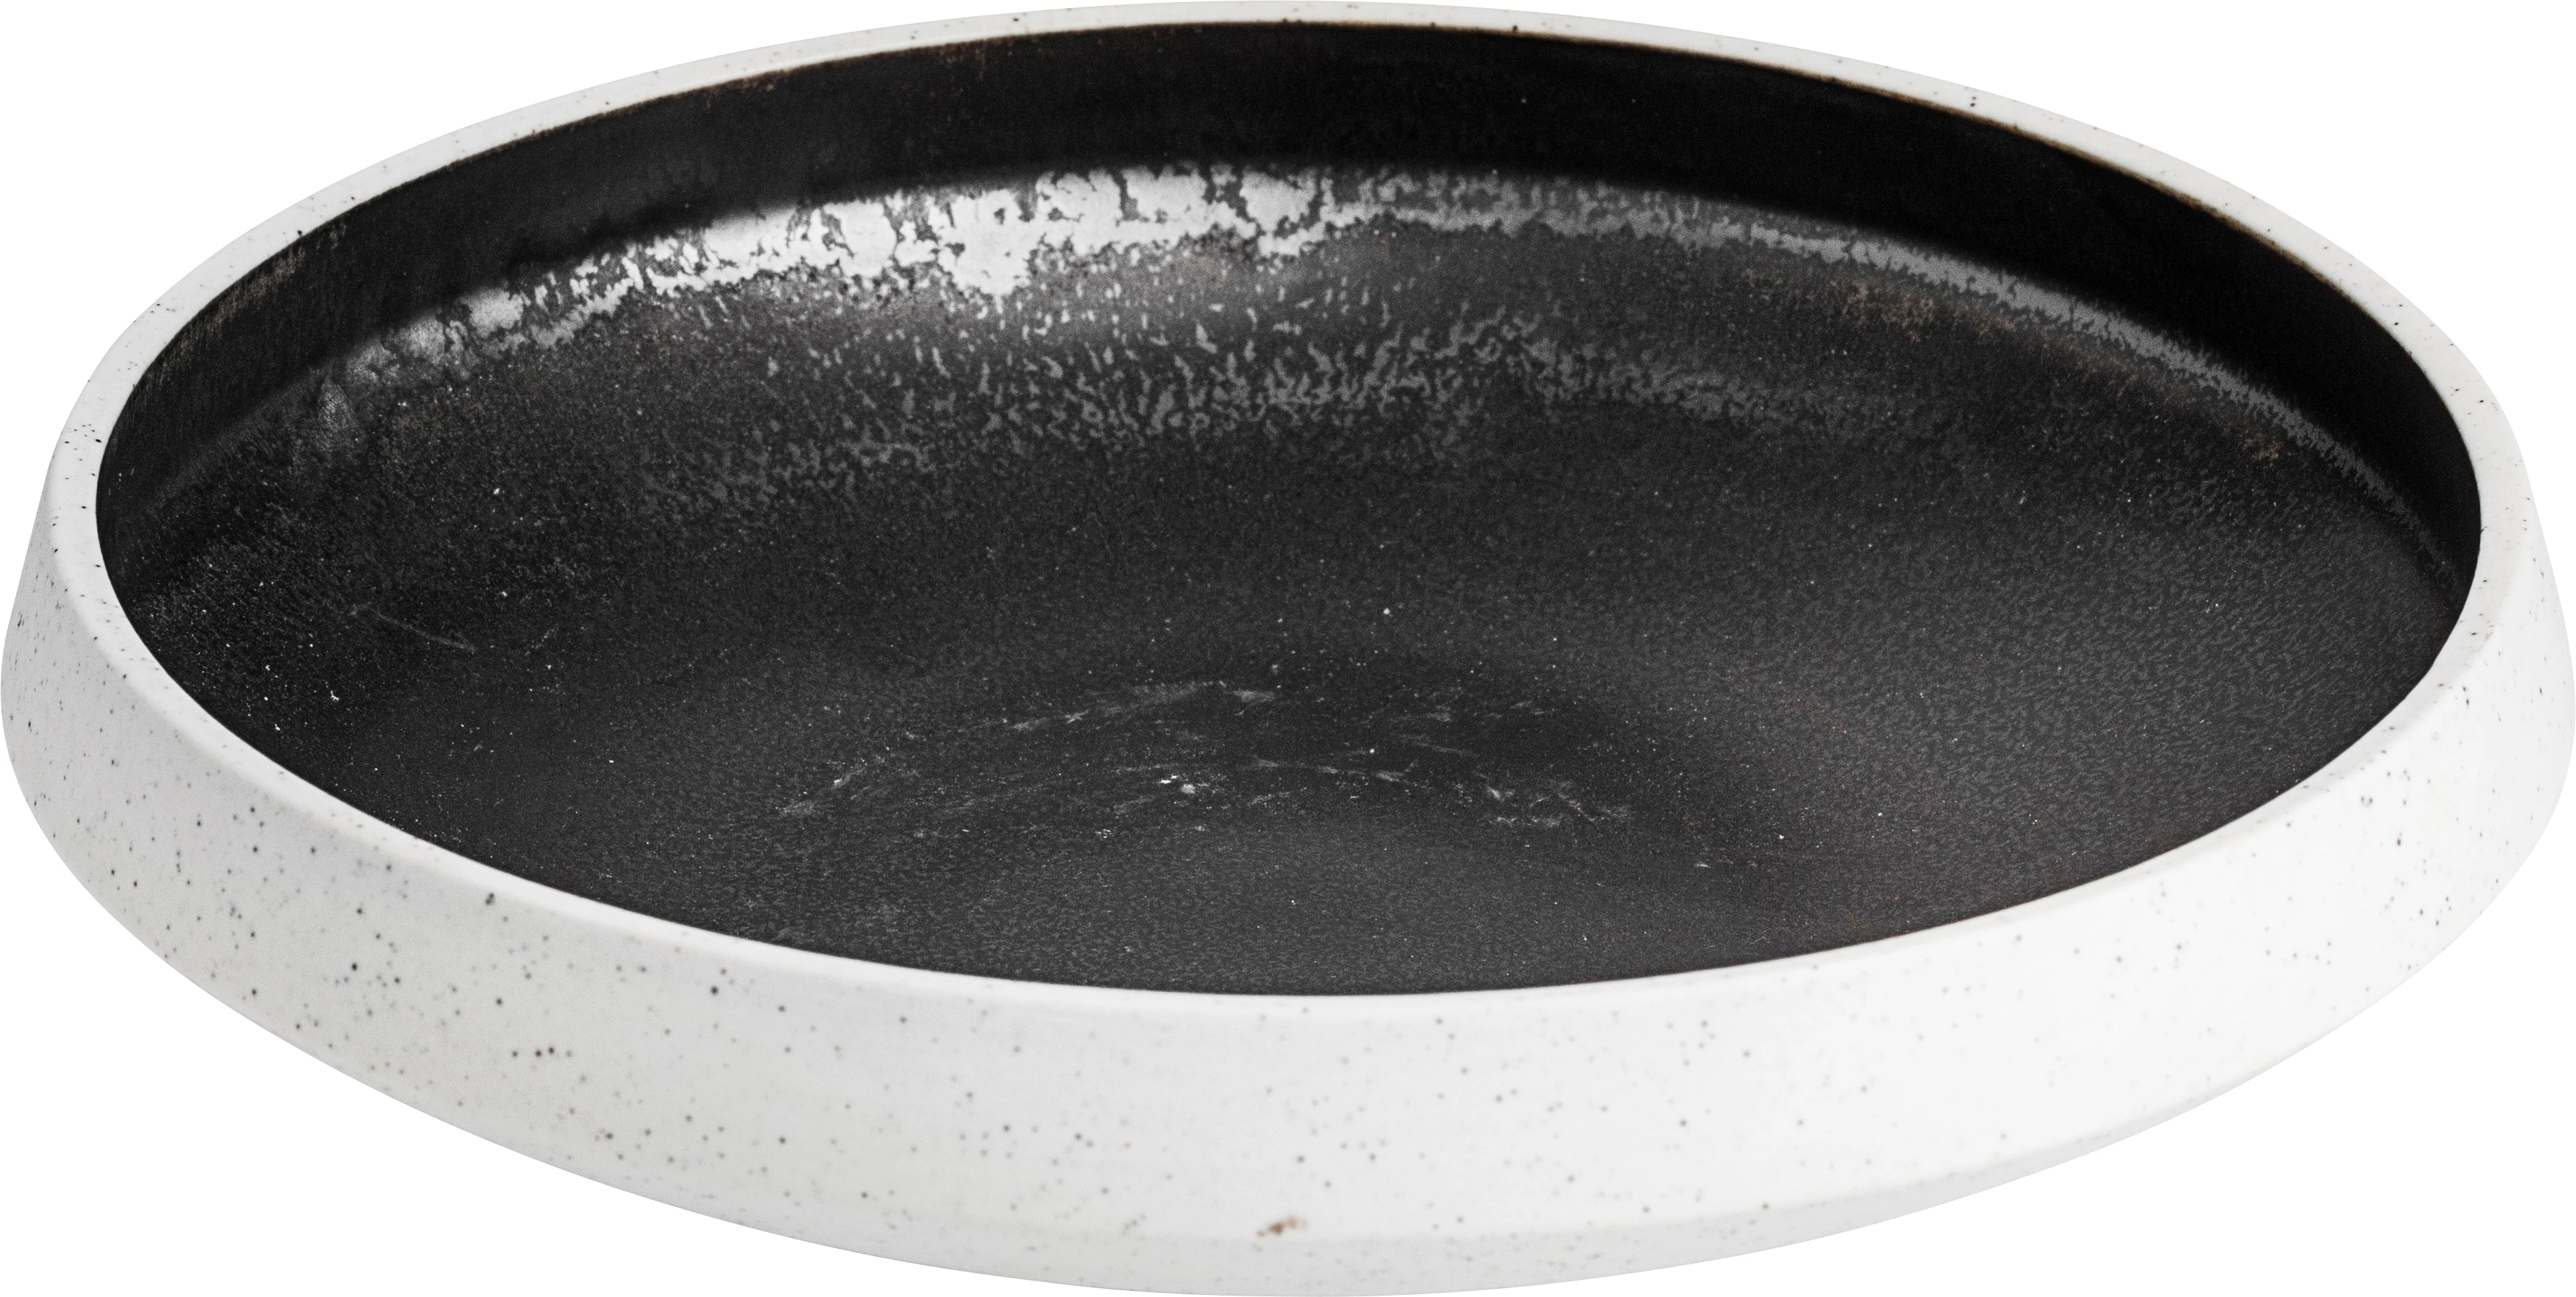 Salt skål, grå/brun, 35 cl, ø18 cm